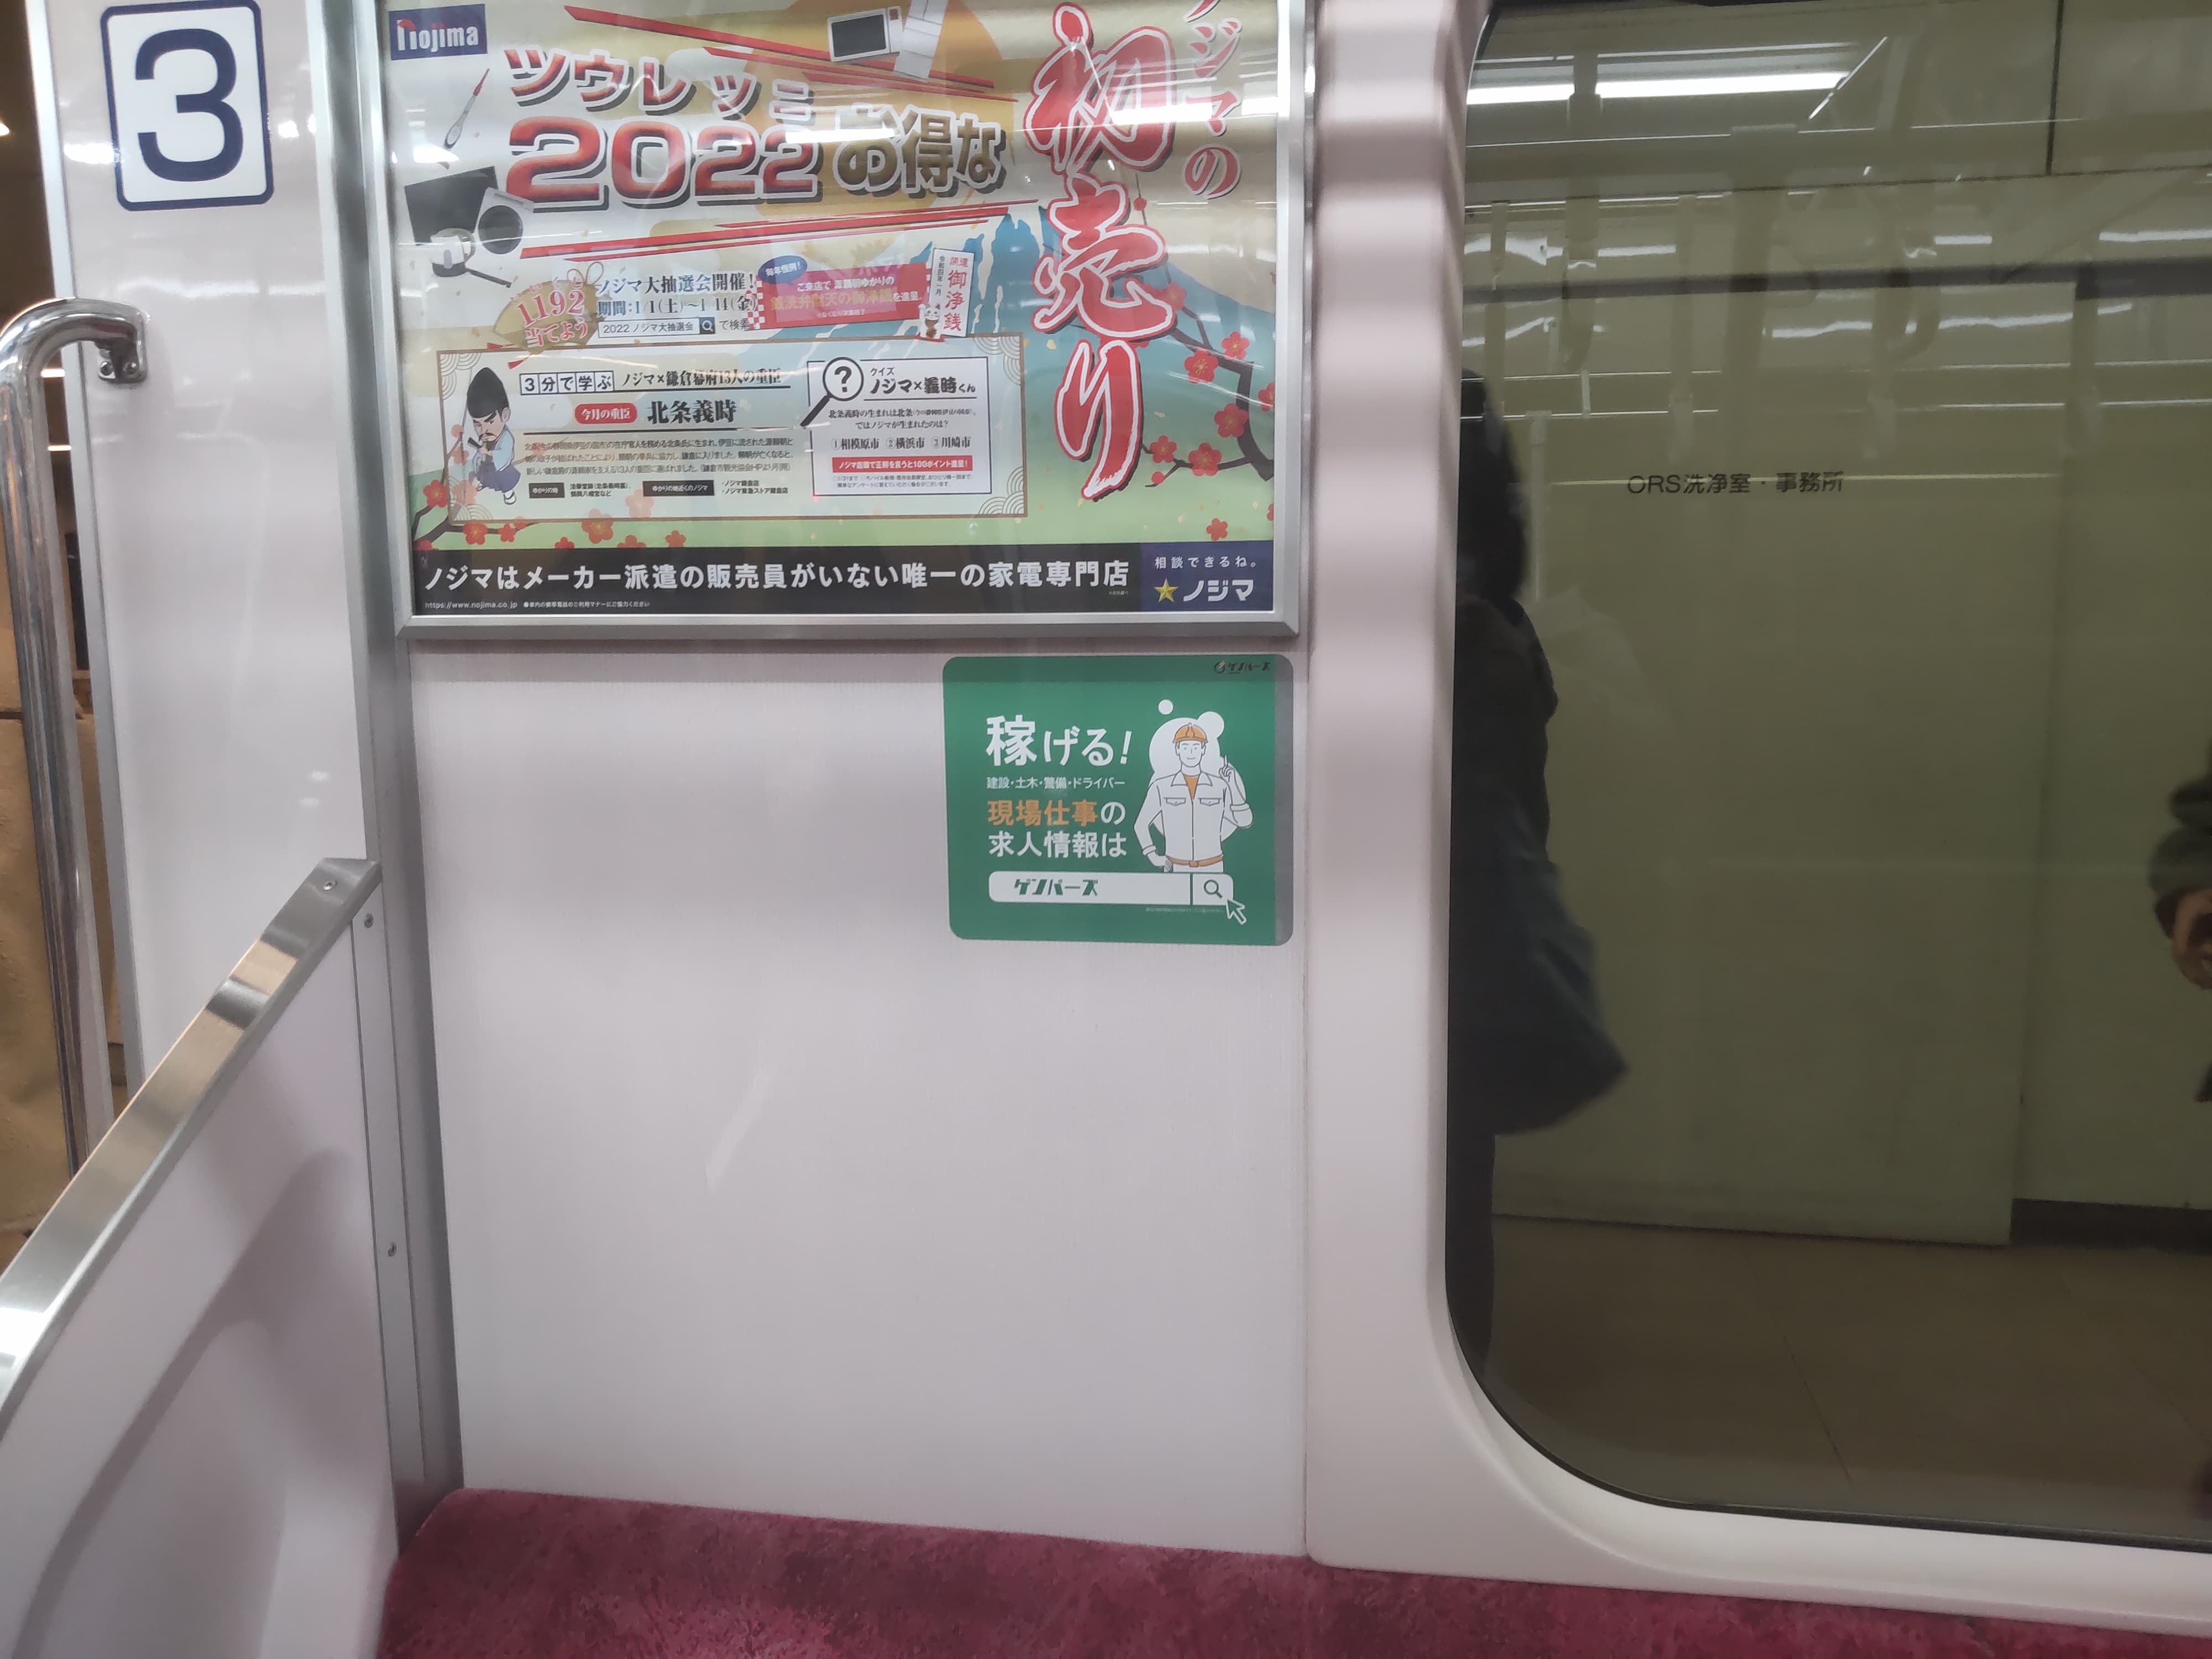 Odakyu Line галт тэрэгний сурталчилгаа